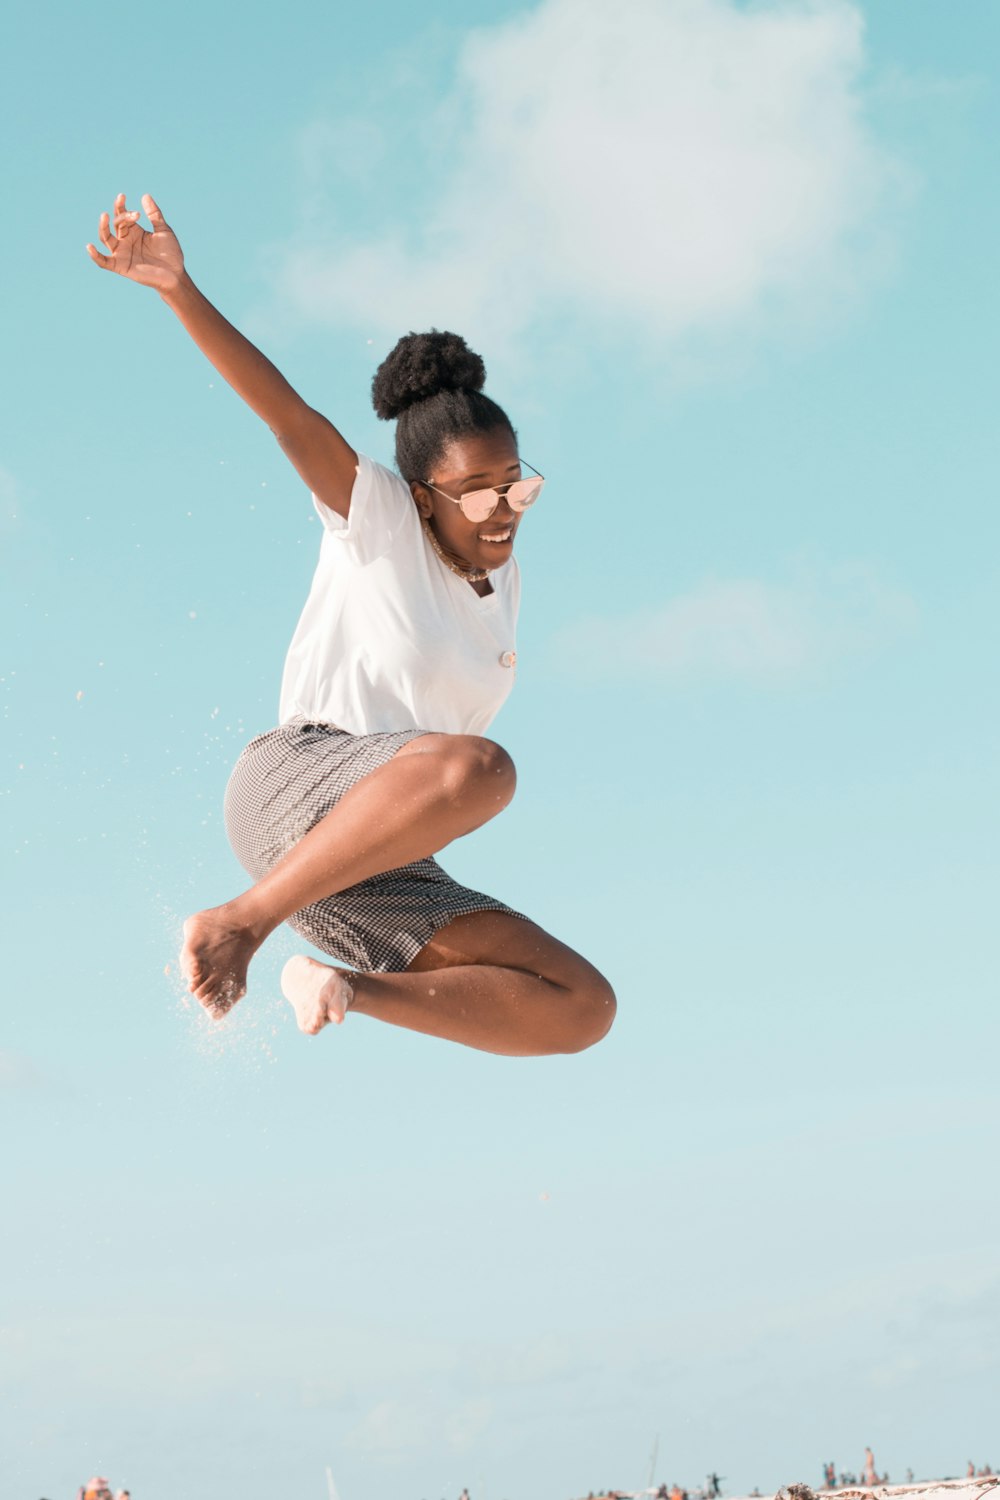 woman jumping wearing white shirt during daytime